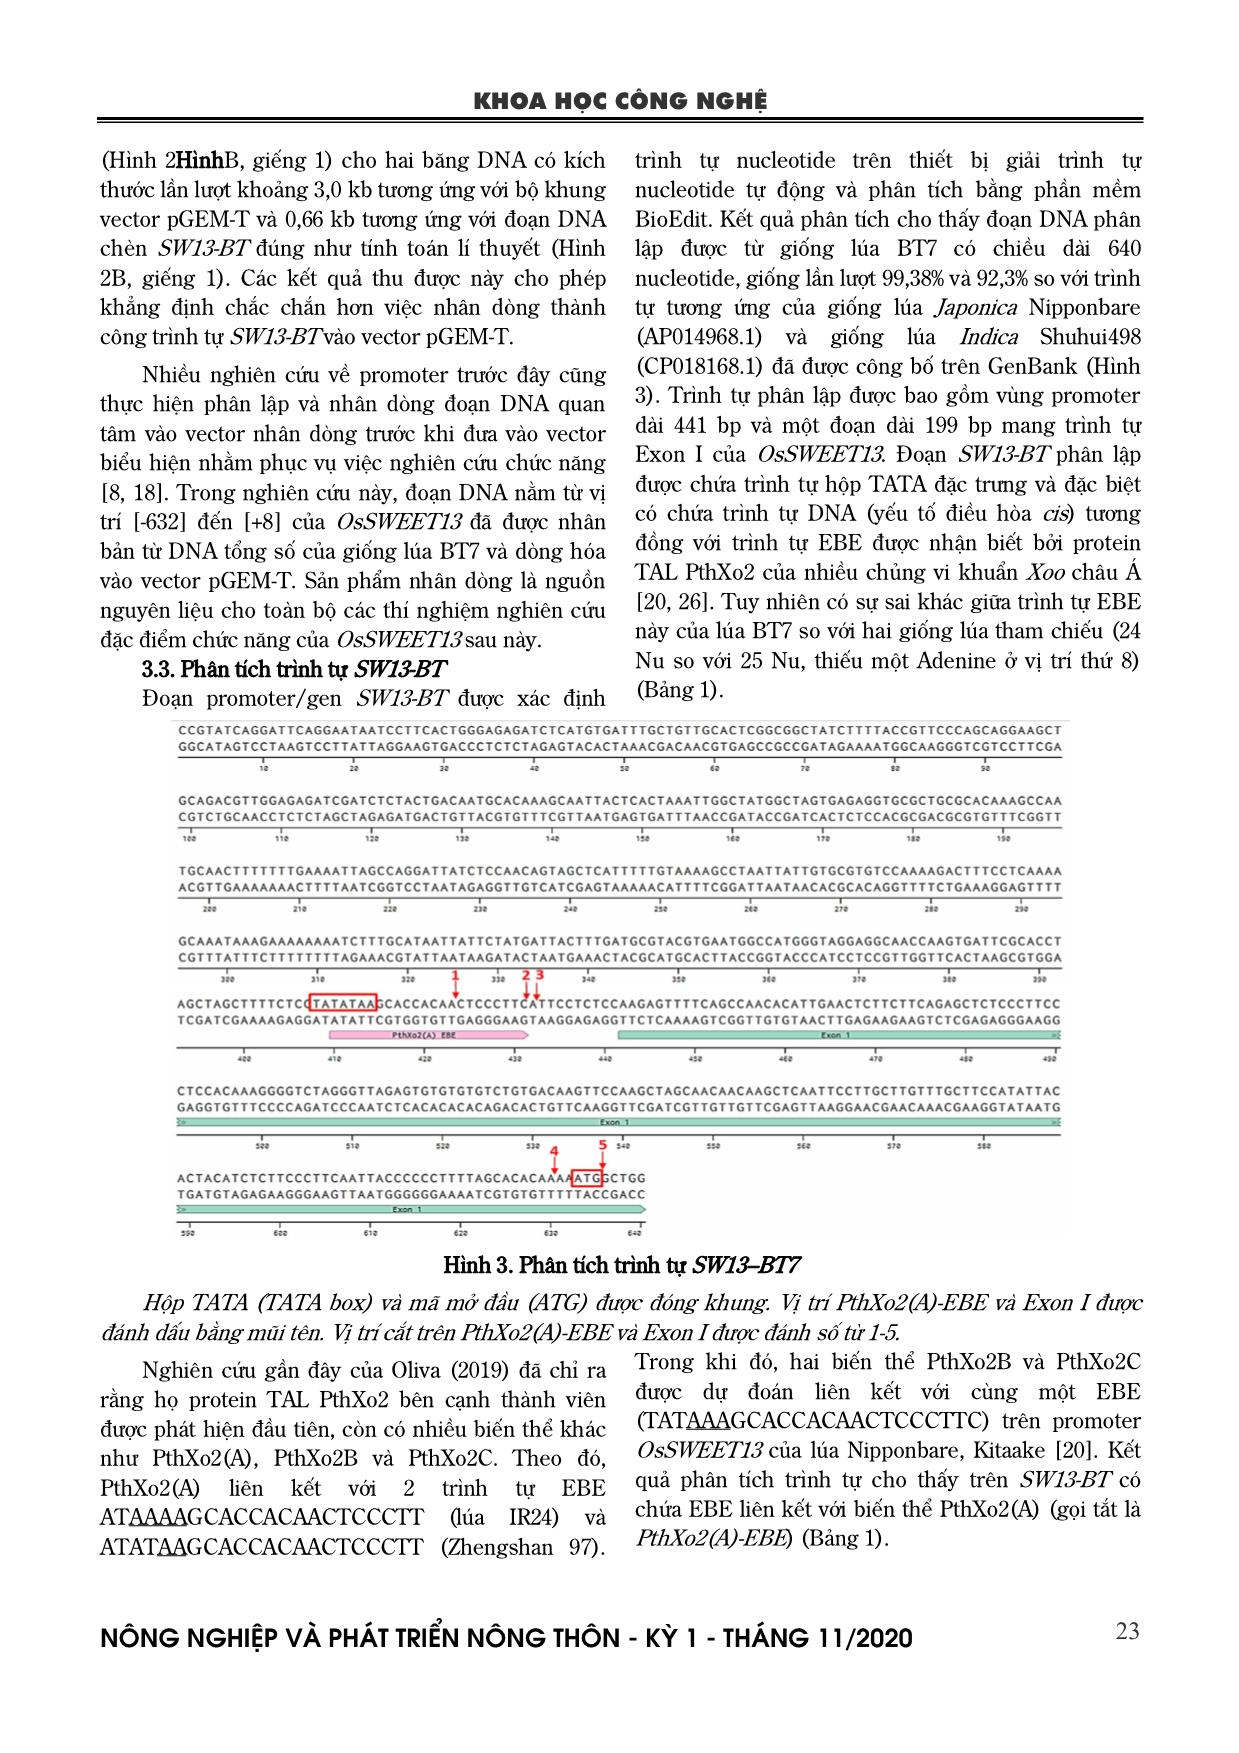 Phân lập và thiết kế gRNA chỉnh sửa promter OsSWEET13 liên quan đến bệnh bạc lá trên lúa Bắc thơm 7 trang 4